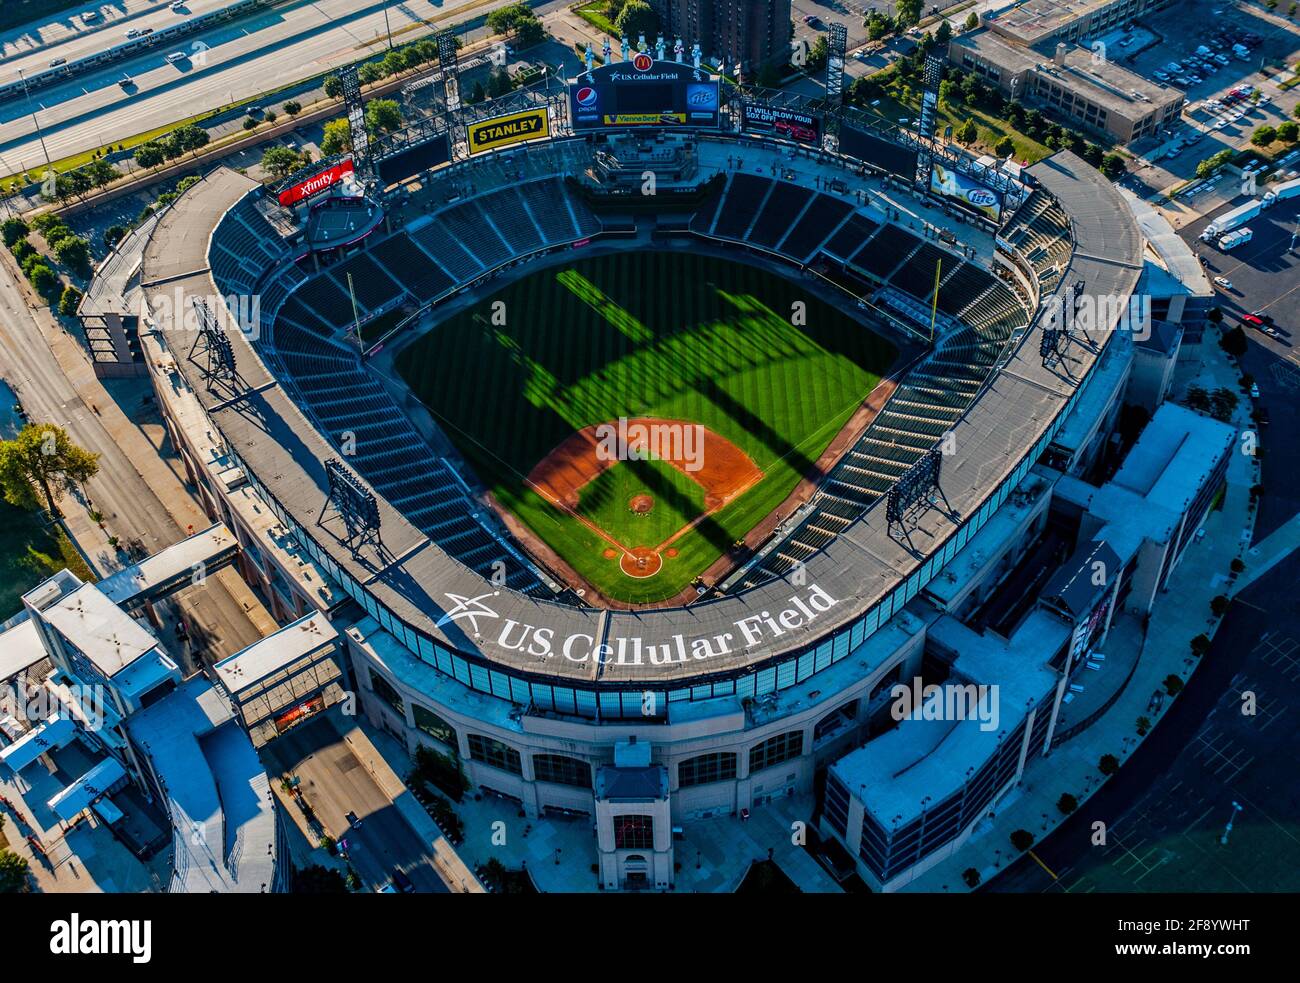 Vista aérea del estadio de béisbol, US Cellular Field, Chicago, Illinois, EE.UU Foto de stock